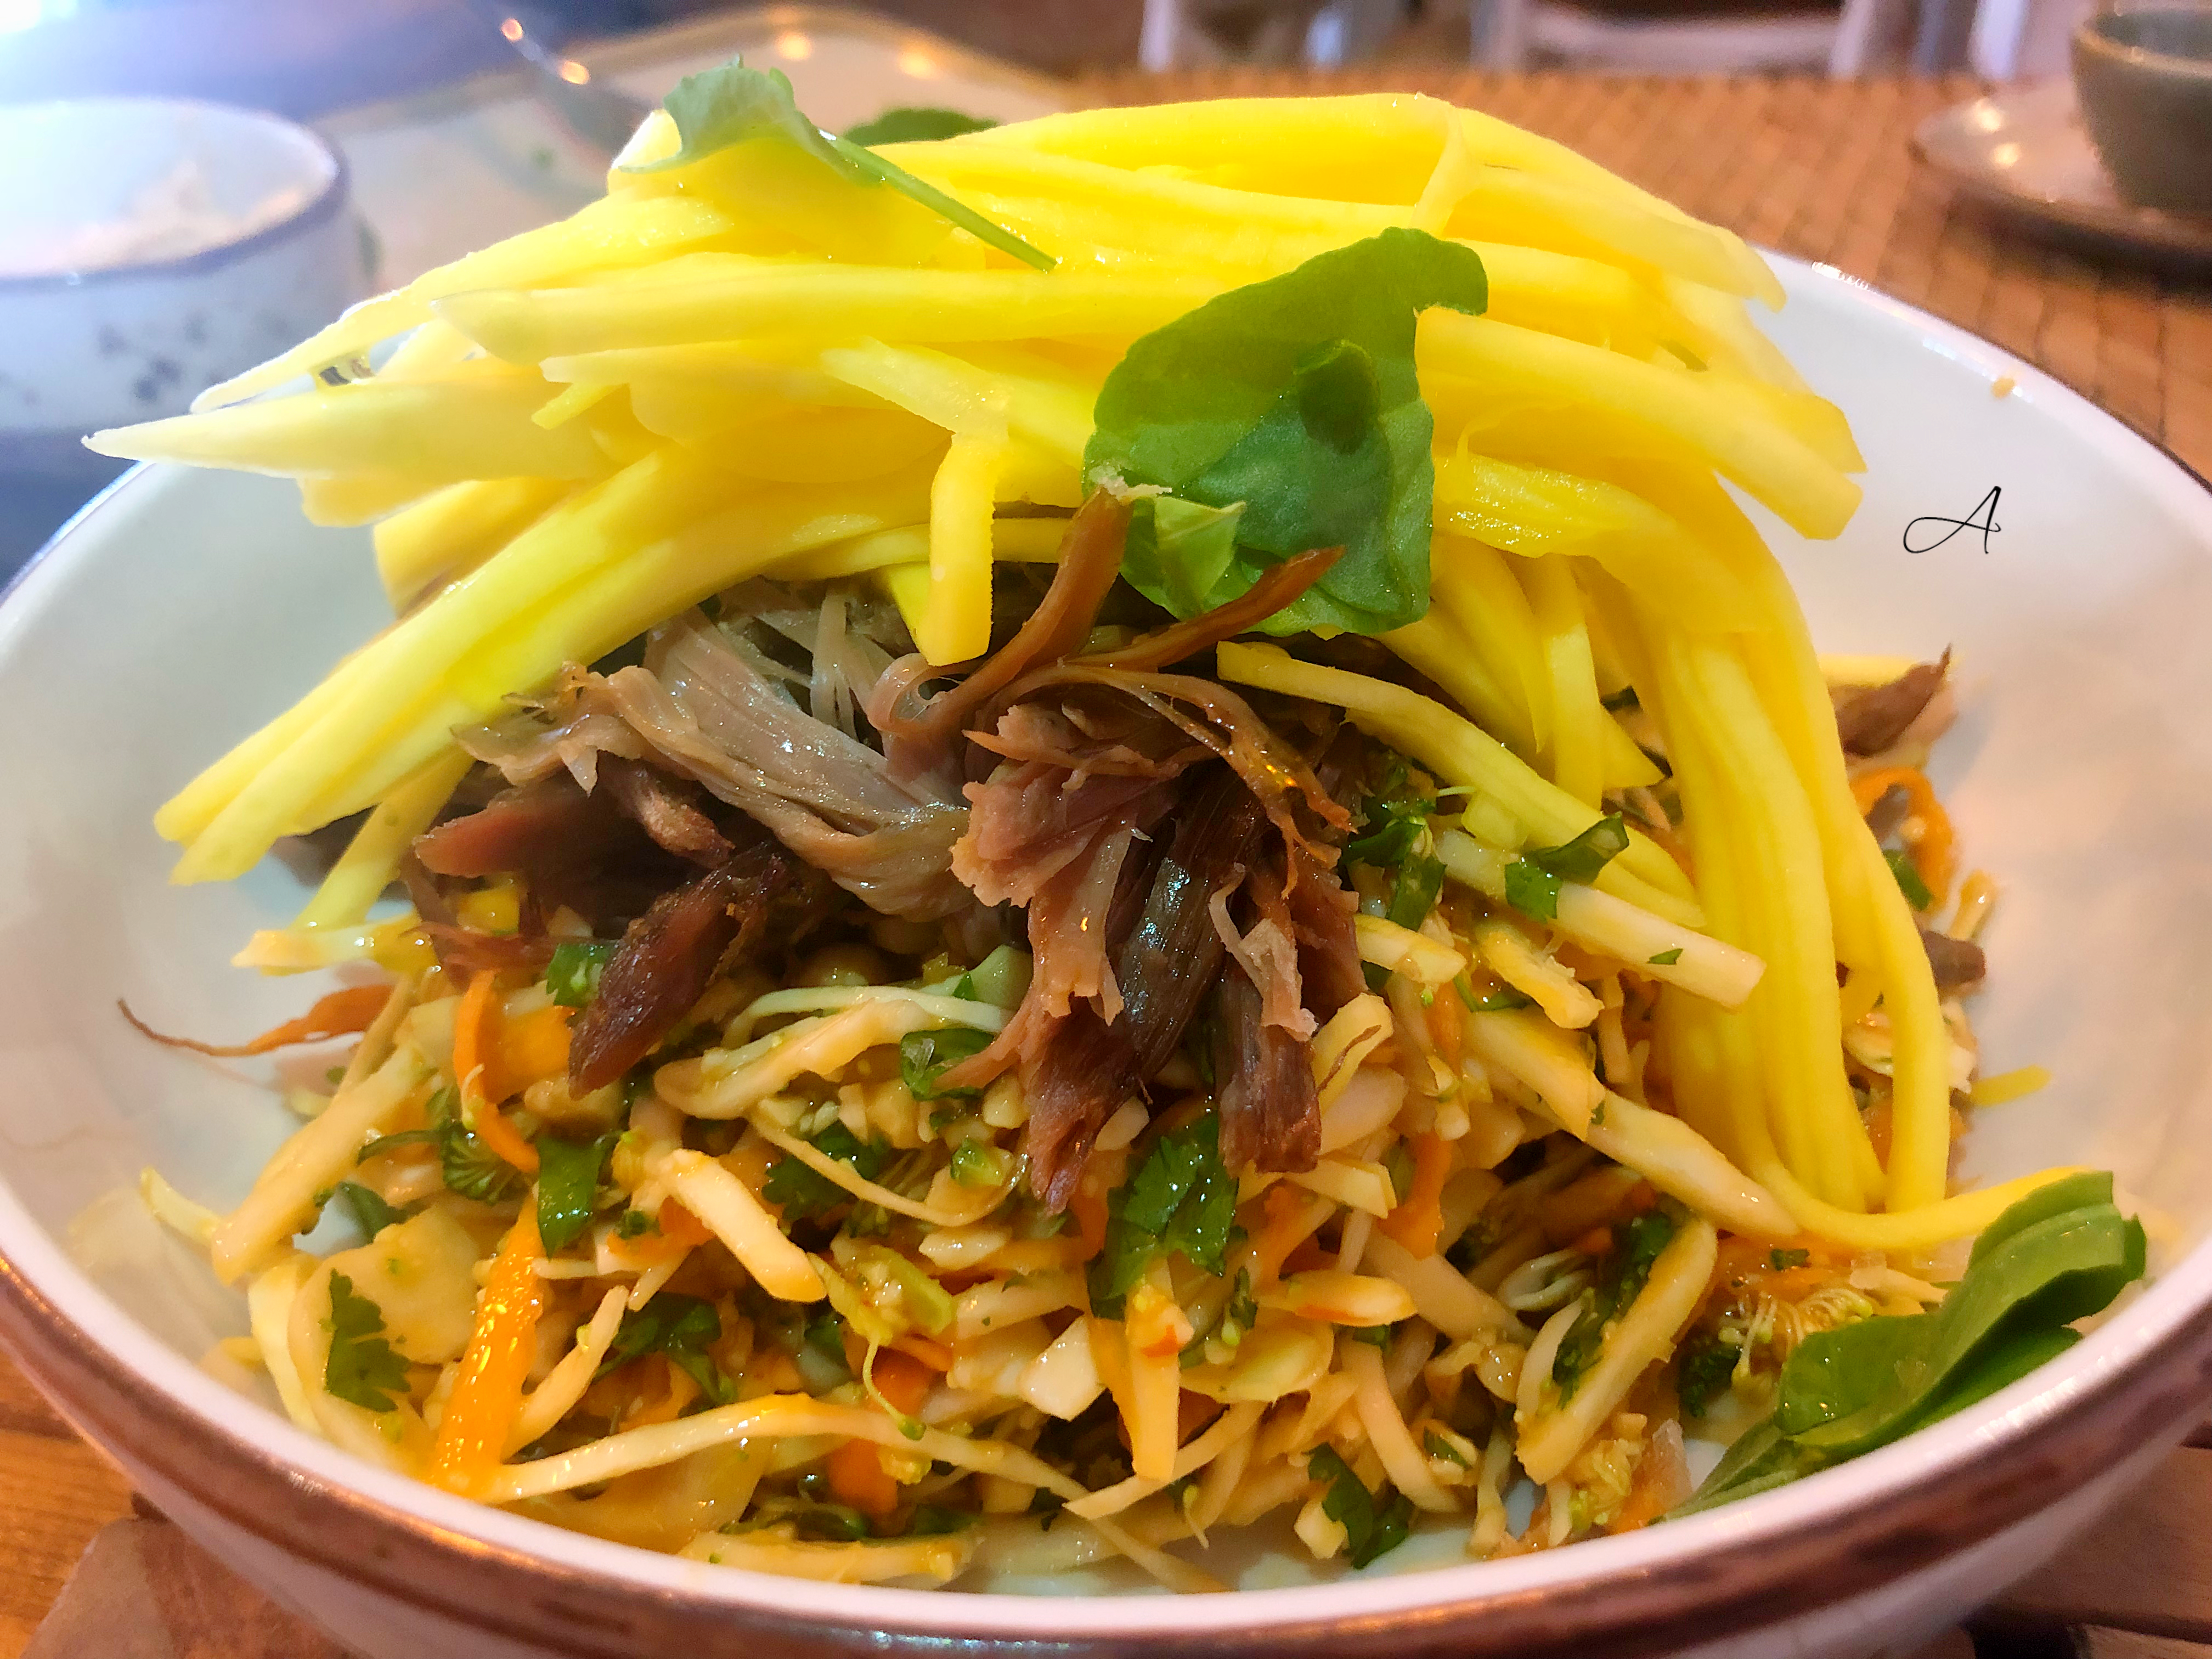 Ensalada tailandesa con mango verde, cacahuete y pato crujiente